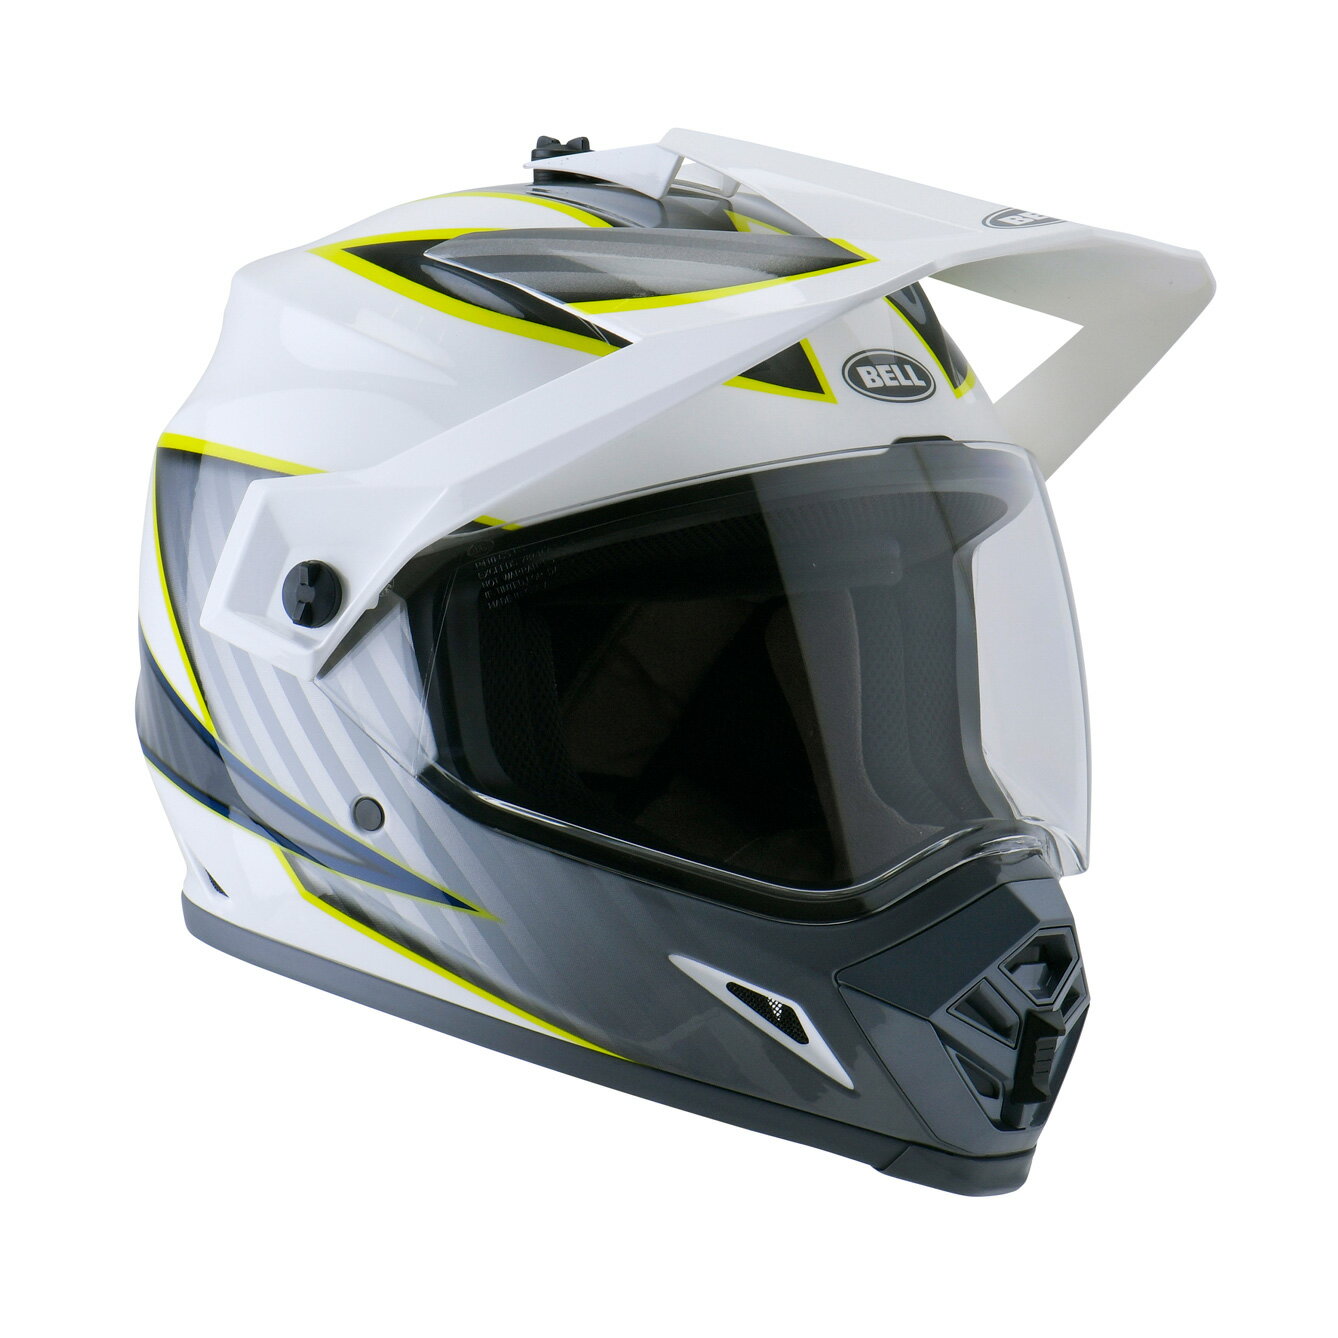 バイク用品, ヘルメット BELL MX-9 MIPS SG L